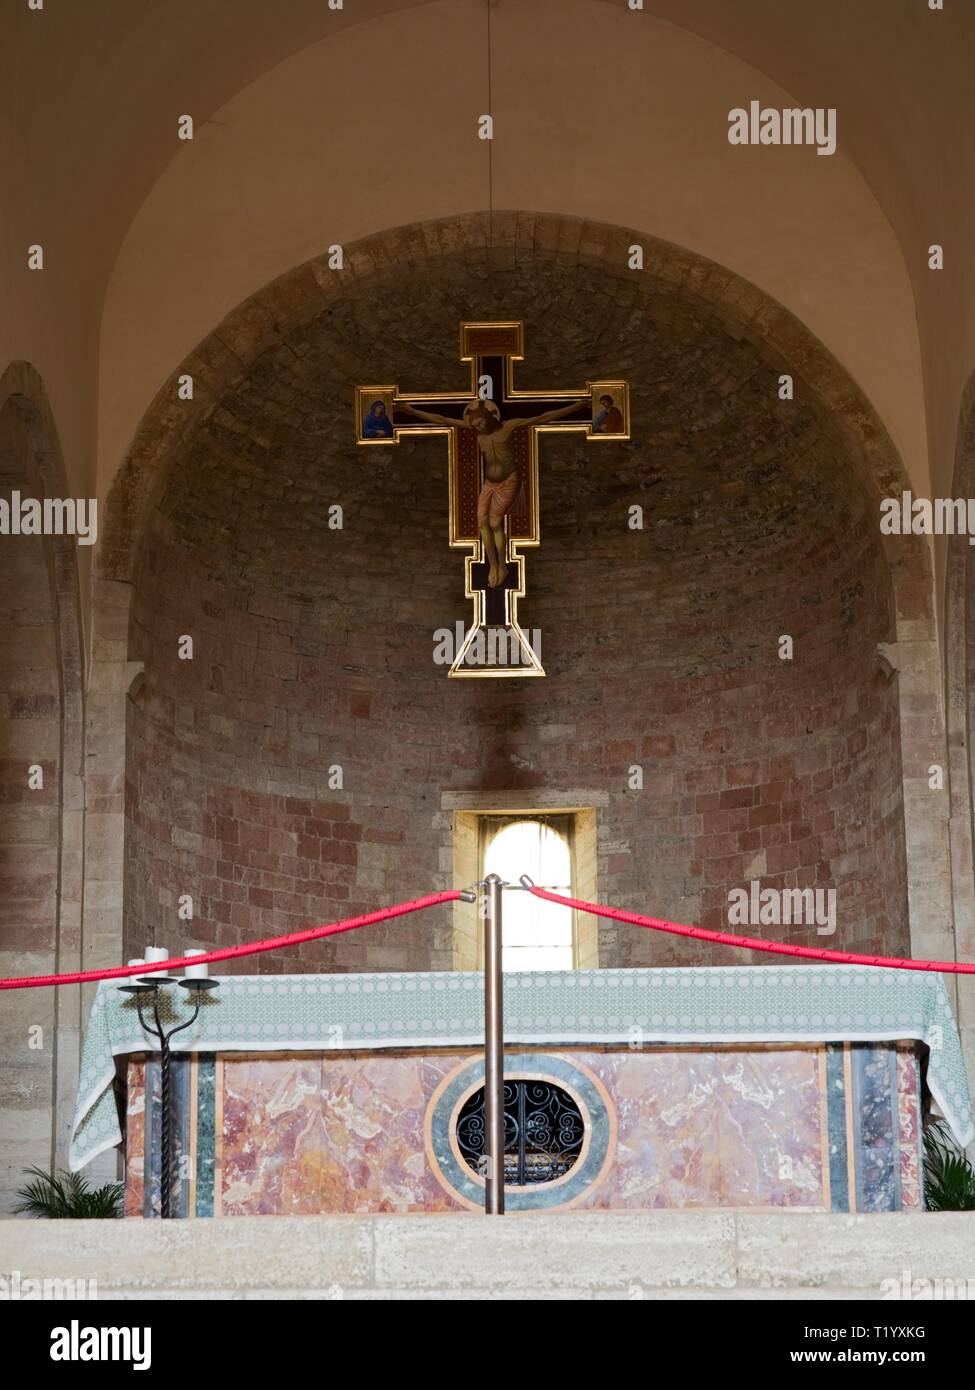 Bevagna Umbrien Italien Innenbereich der mittelalterlichen Kirche von San Michele Arcangelo. Blick auf den Altar mit dem antiken Kruzifix aus dem 15. Jahrhundert Stockfoto